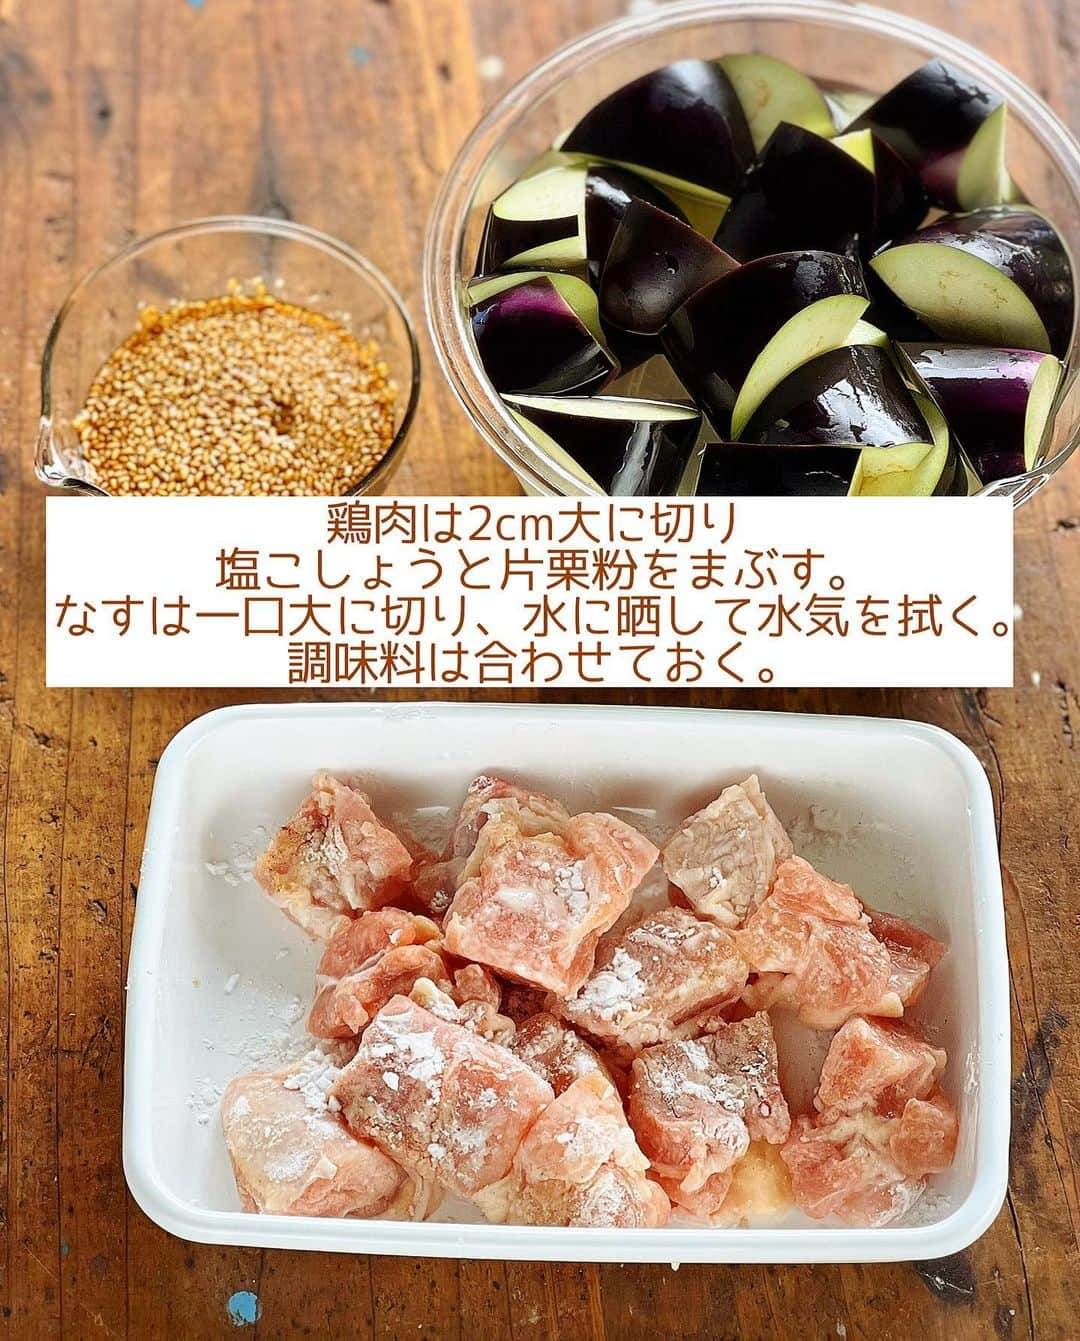 Mizuki【料理ブロガー・簡単レシピ】さんのインスタグラム写真 - (Mizuki【料理ブロガー・簡単レシピ】Instagram)「・一気に焼くだけ🍆 ⁡ ［#レシピ ］ ーーーーーーーーーーーーー 鶏肉となすのごまだれ炒め ーーーーーーーーーーーーー ⁡ ⁡ ⁡ おはようございます☺️ ⁡ 今日ご紹介させていただくのは \ 鶏肉となすのごまだれ炒め / ⁡ 鶏肉となすを一緒に焼いて たれをからめるだけの簡単レシピ💕 ごまたっぷりの甘辛味で ごはんもお酒もすすみますよ〜👌 ⁡ フライパンひとつでできるので よかったらお試し下さいね😋 ⁡ ⁡ ⁡ ⋱⋰ ⋱⋰ ⋱⋰ ⋱⋰ ⋱⋰ ⋱⋰ ⋱⋰ ☑︎簡単・時短・節約レシピ更新中 @mizuki_31cafe ⁡ ☑︎謎の暮らし＆変なライブ垢 @mizuki_kurashi ⋱⋰ ⋱⋰ ⋱⋰ ⋱⋰ ⋱⋰ ⋱⋰ ⋱⋰ ⁡ ⁡ ⁡ ＿＿＿＿＿＿＿＿＿＿＿＿＿＿＿＿＿＿＿ 【2人分】 鶏もも肉...1枚(250g) 塩こしょう...少々 片栗粉...大1 なす...2本 ごま油...大2 ⚫︎醤油・みりん・ごま...各大1.5 ⚫︎砂糖...大1/2 ⚫︎生姜チューブ...1cm ⁡ 1.鶏肉は2cm大に切り、塩こしょうを振って片栗粉をまぶす。なすは一口大に切り、水に5分晒して水気を拭く。⚫︎は合わせておく。 2.フライパンにごま油を中火で熱し、鶏肉となすを(どちらも皮目から)焼く。焼き色が付いたら裏返し、更に焼いて火を通す。 3.⚫︎を加えて煮からめる。 ￣￣￣￣￣￣￣￣￣￣￣￣￣￣￣￣￣￣￣ ⁡ ⁡ 《ポイント》 ♦︎鶏肉は小さめに切るとなすと同じタイミングで火が通ります♩ ♦︎なすの水気は拭き、皮から焼く(皮に油をコーティングする)と色よく仕上がります♩フライパンに入れる時、皮が油に付くように入れると◎ ⁡ ⁡ ⁡ ⁡ ⁡ ⁡ 💬💬💬 昨日はヨシケイさんのライブ配信に お付き合いいただきまして ありがとうございました☺️🍳 ⁡(@yoshikeigroups )  ヨシケイさんのライブ配信は いつもゆるっと穏やかで 今回もとても楽しかったです😂 みなさんのコメントがやさしすぎて もなかちゃんも感激していました🥺💕 (ライブのアーカイブは 不具合が発生しているようで まだアップできないらしい•••😭) ⁡ さて、昨日ご紹介した 『ほったらかし煮献立』を含む 5日分のミールキット(お試し5days)は 現在ご注文いただけますので よかったらご活用くださいね😋💕 ⁡ ⁡ ⁡ ⁡ ⁡ ⁡ ⋱⋰ ⋱⋰ ⋱⋰ ⋱⋰ ⋱⋰ ⋱⋰ ⋱⋰  愛用している調理器具・器など   #楽天ROOMに載せてます ‎𐩢𐩺  (ハイライトから飛べます🕊️) ⋱⋰ ⋱⋰ ⋱⋰ ⋱⋰ ⋱⋰ ⋱⋰ ⋱⋰ ⁡ ⁡ ⁡ ⁡ ⁡ ⁡ ✼••┈┈┈┈┈••✼••┈┈┈┈┈••✼ 今日のごはんこれに決まり！ ‎𓊆#Mizukiのレシピノート 500品𓊇 ✼••┈┈┈┈┈••✼••┈┈┈┈┈••✼ ⁡ ˗ˏˋ おかげさまで25万部突破 ˎˊ˗ 料理レシピ本大賞準大賞を受賞しました✨ ⁡ 6000点の中からレシピを厳選し まさかの【500レシピ掲載】 肉や魚のメインおかずはもちろん 副菜、丼、麺、スープ、お菓子 ハレの日のレシピ、鍋のレシピまで 全てこの一冊で完結 𓌉◯𓇋 (全国の書店・ネット書店で発売中) ⁡ ⁡ ⁡ ⁡ ⁡ ⁡ #鶏肉となすのごまだれ炒めm #なす #なすレシピ #鶏肉 #鶏肉レシピ #ごまだれ #夏野菜  #夏野菜レシピ #節約料理 #簡単料理  #時短料理 #料理 #mizukiレシピ  #アルモンデ #時短レシピ #節約レシピ #簡単レシピ」7月2日 6時57分 - mizuki_31cafe